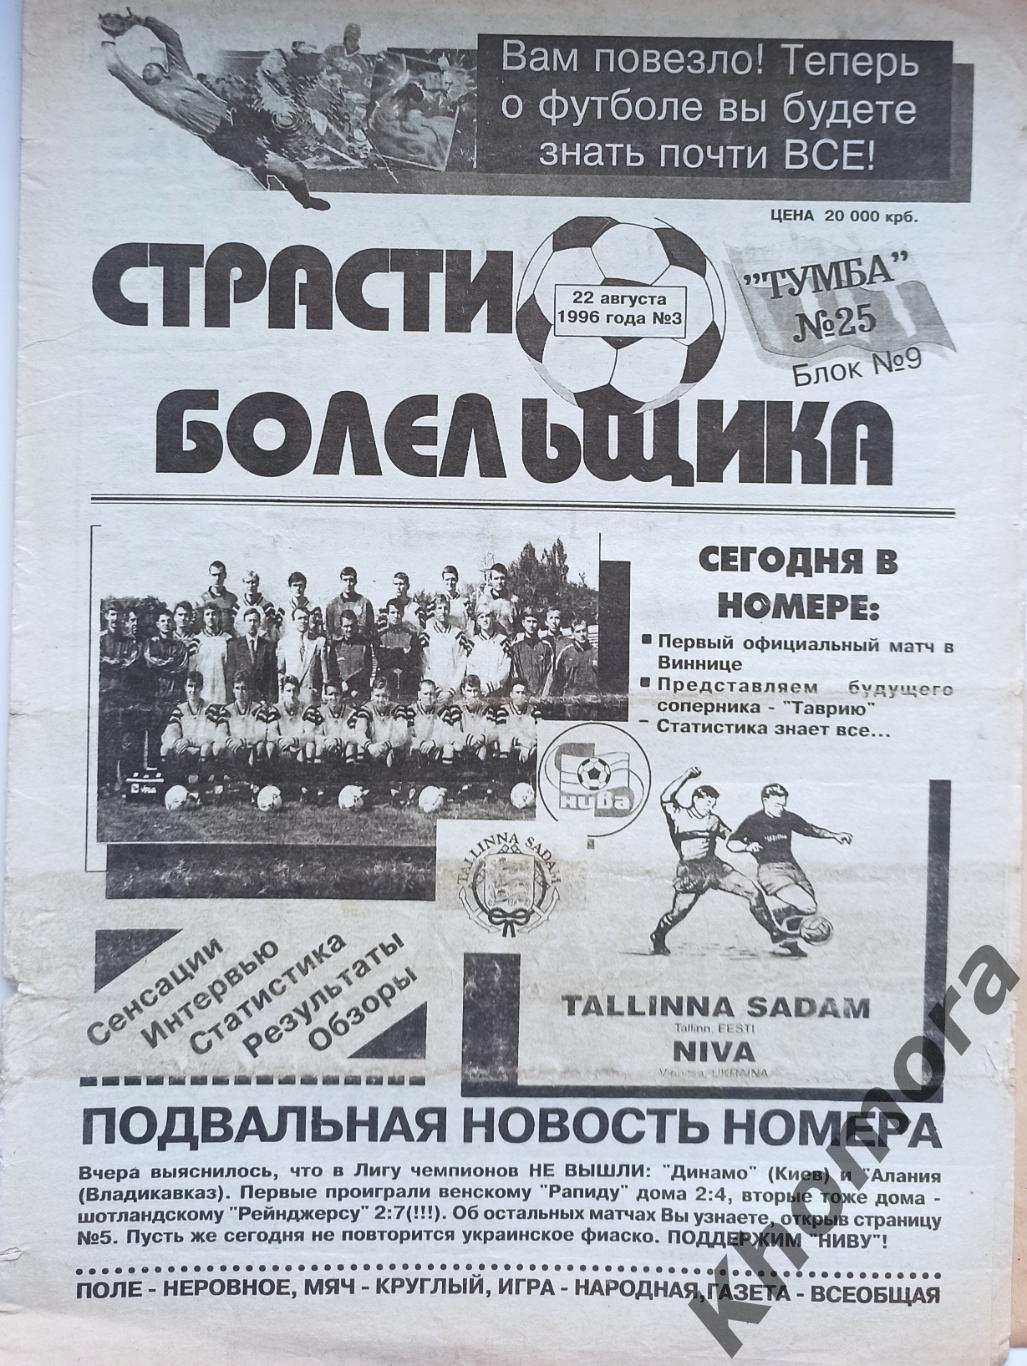 Страсти болельщика (Винница) 22.08.1996 - газета